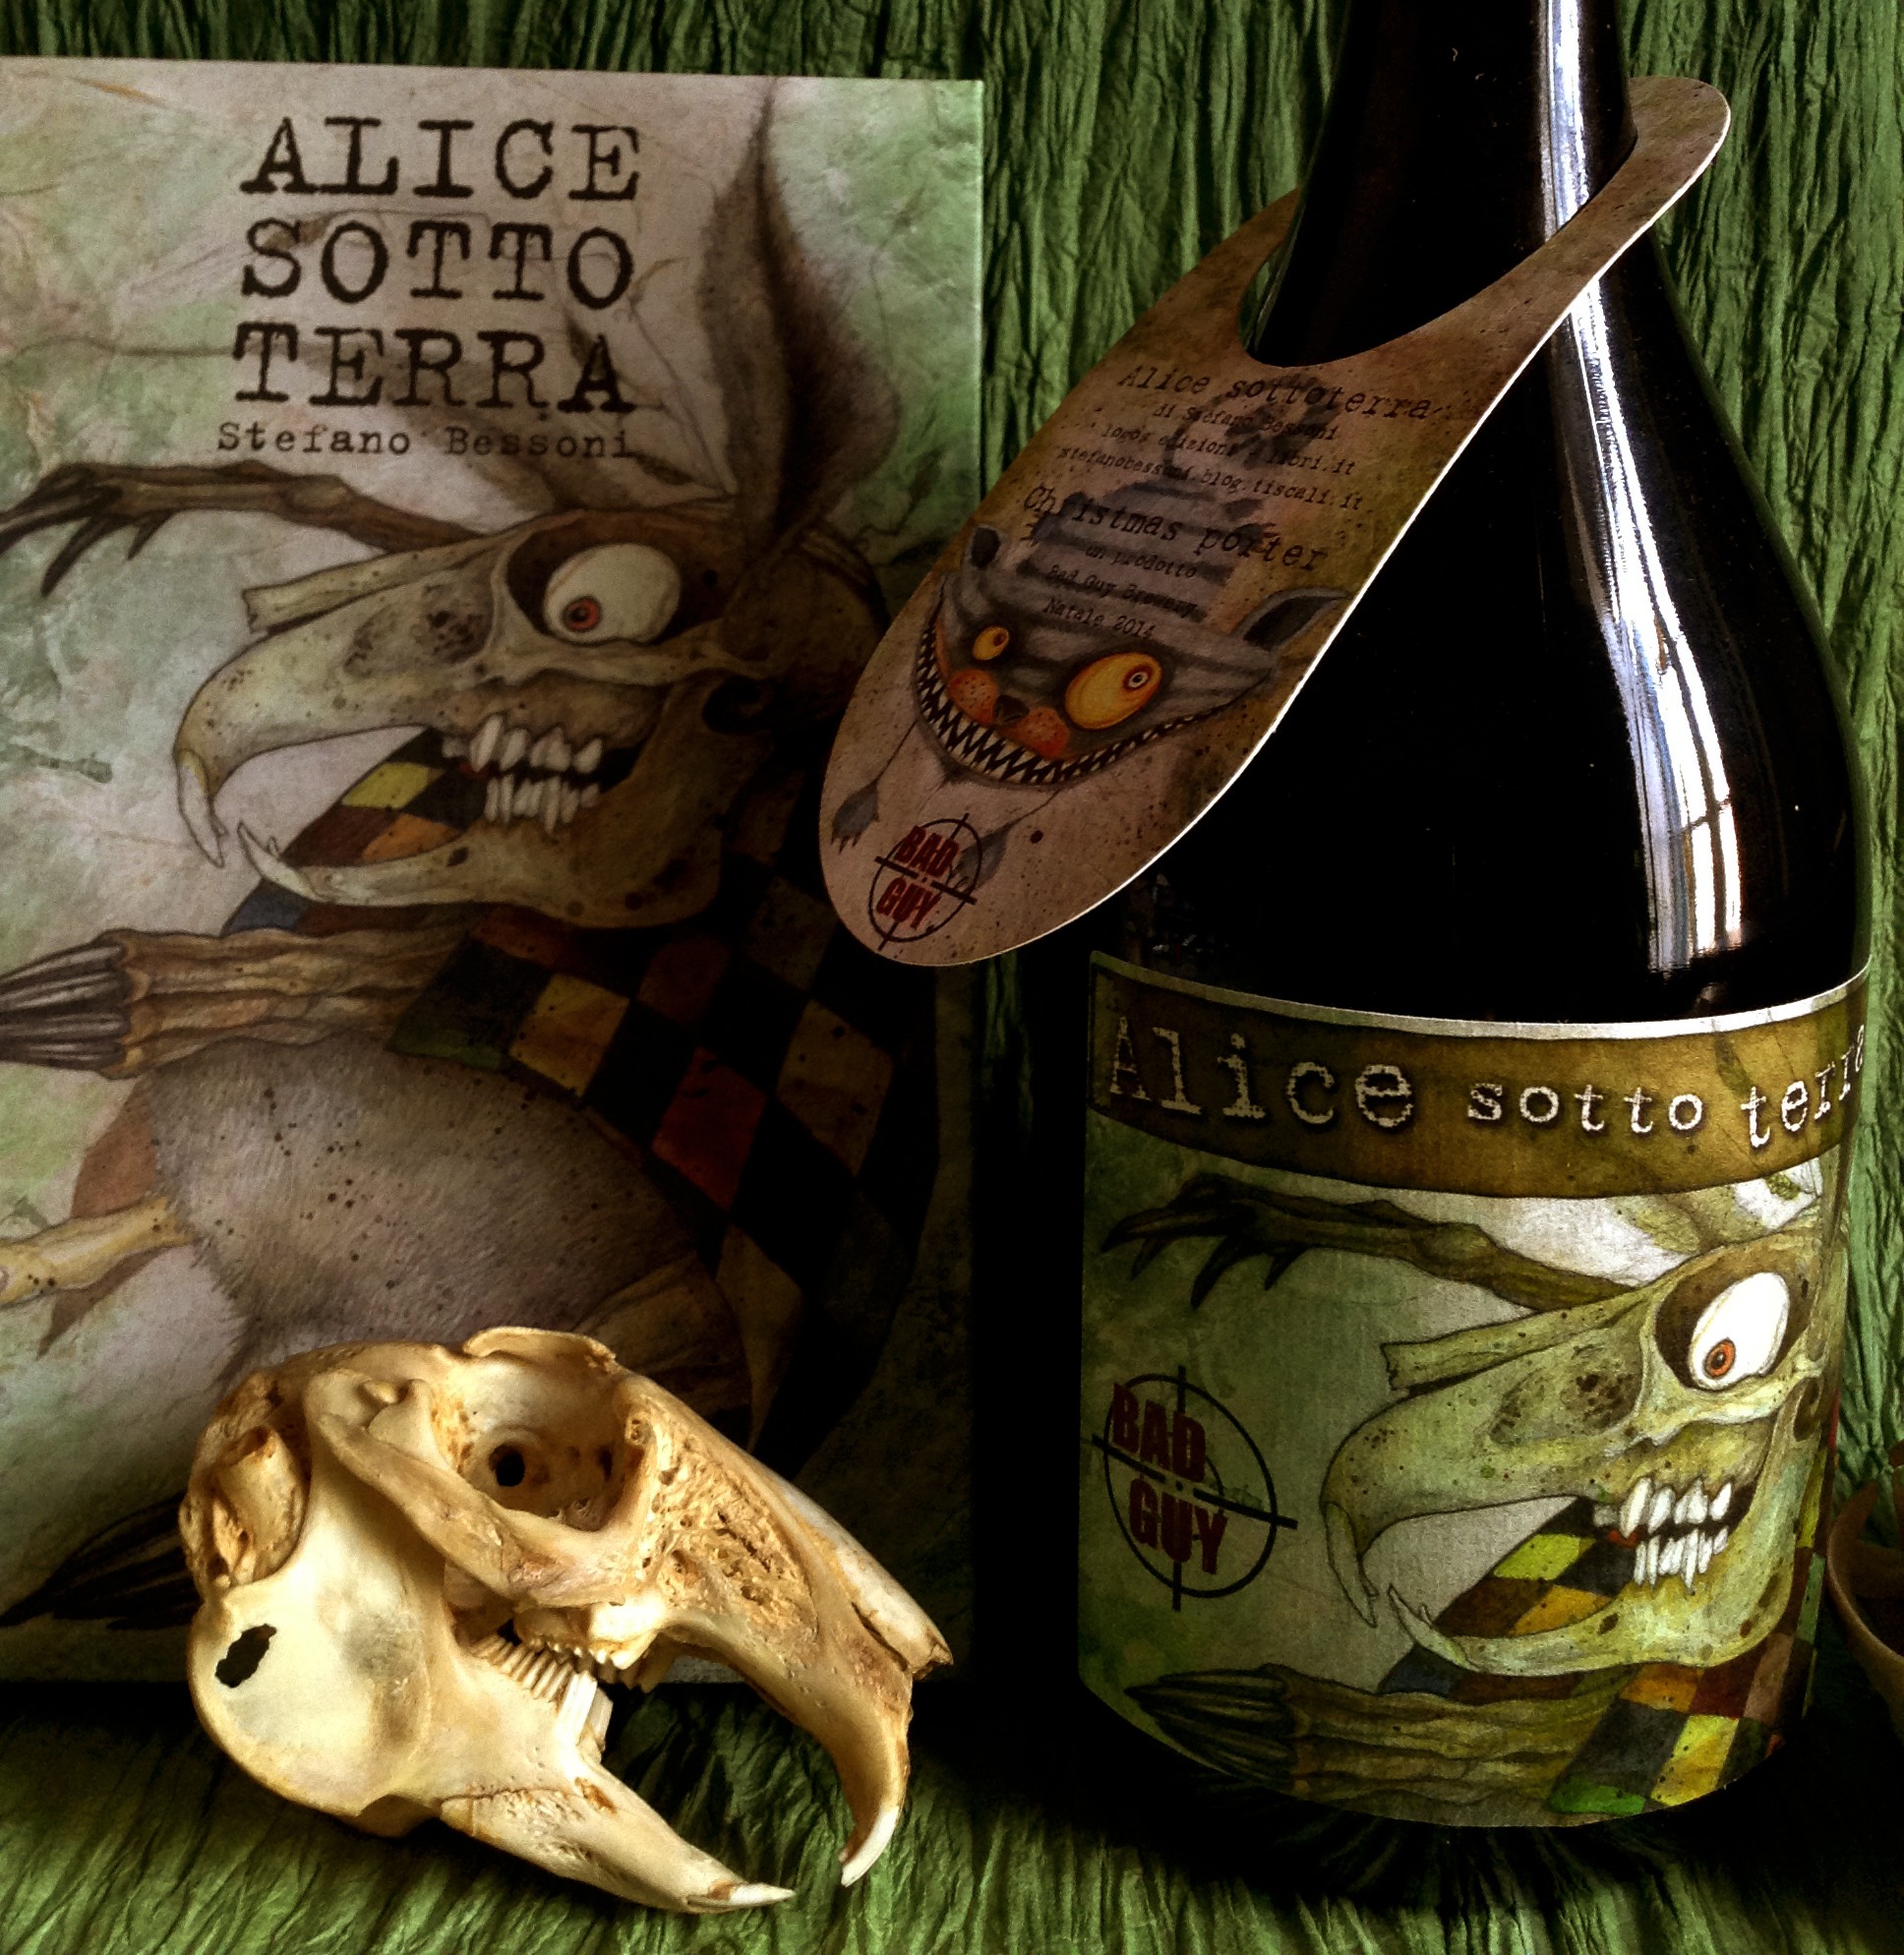 La birra di Alice Sotto terra ©Stefano Bessoni